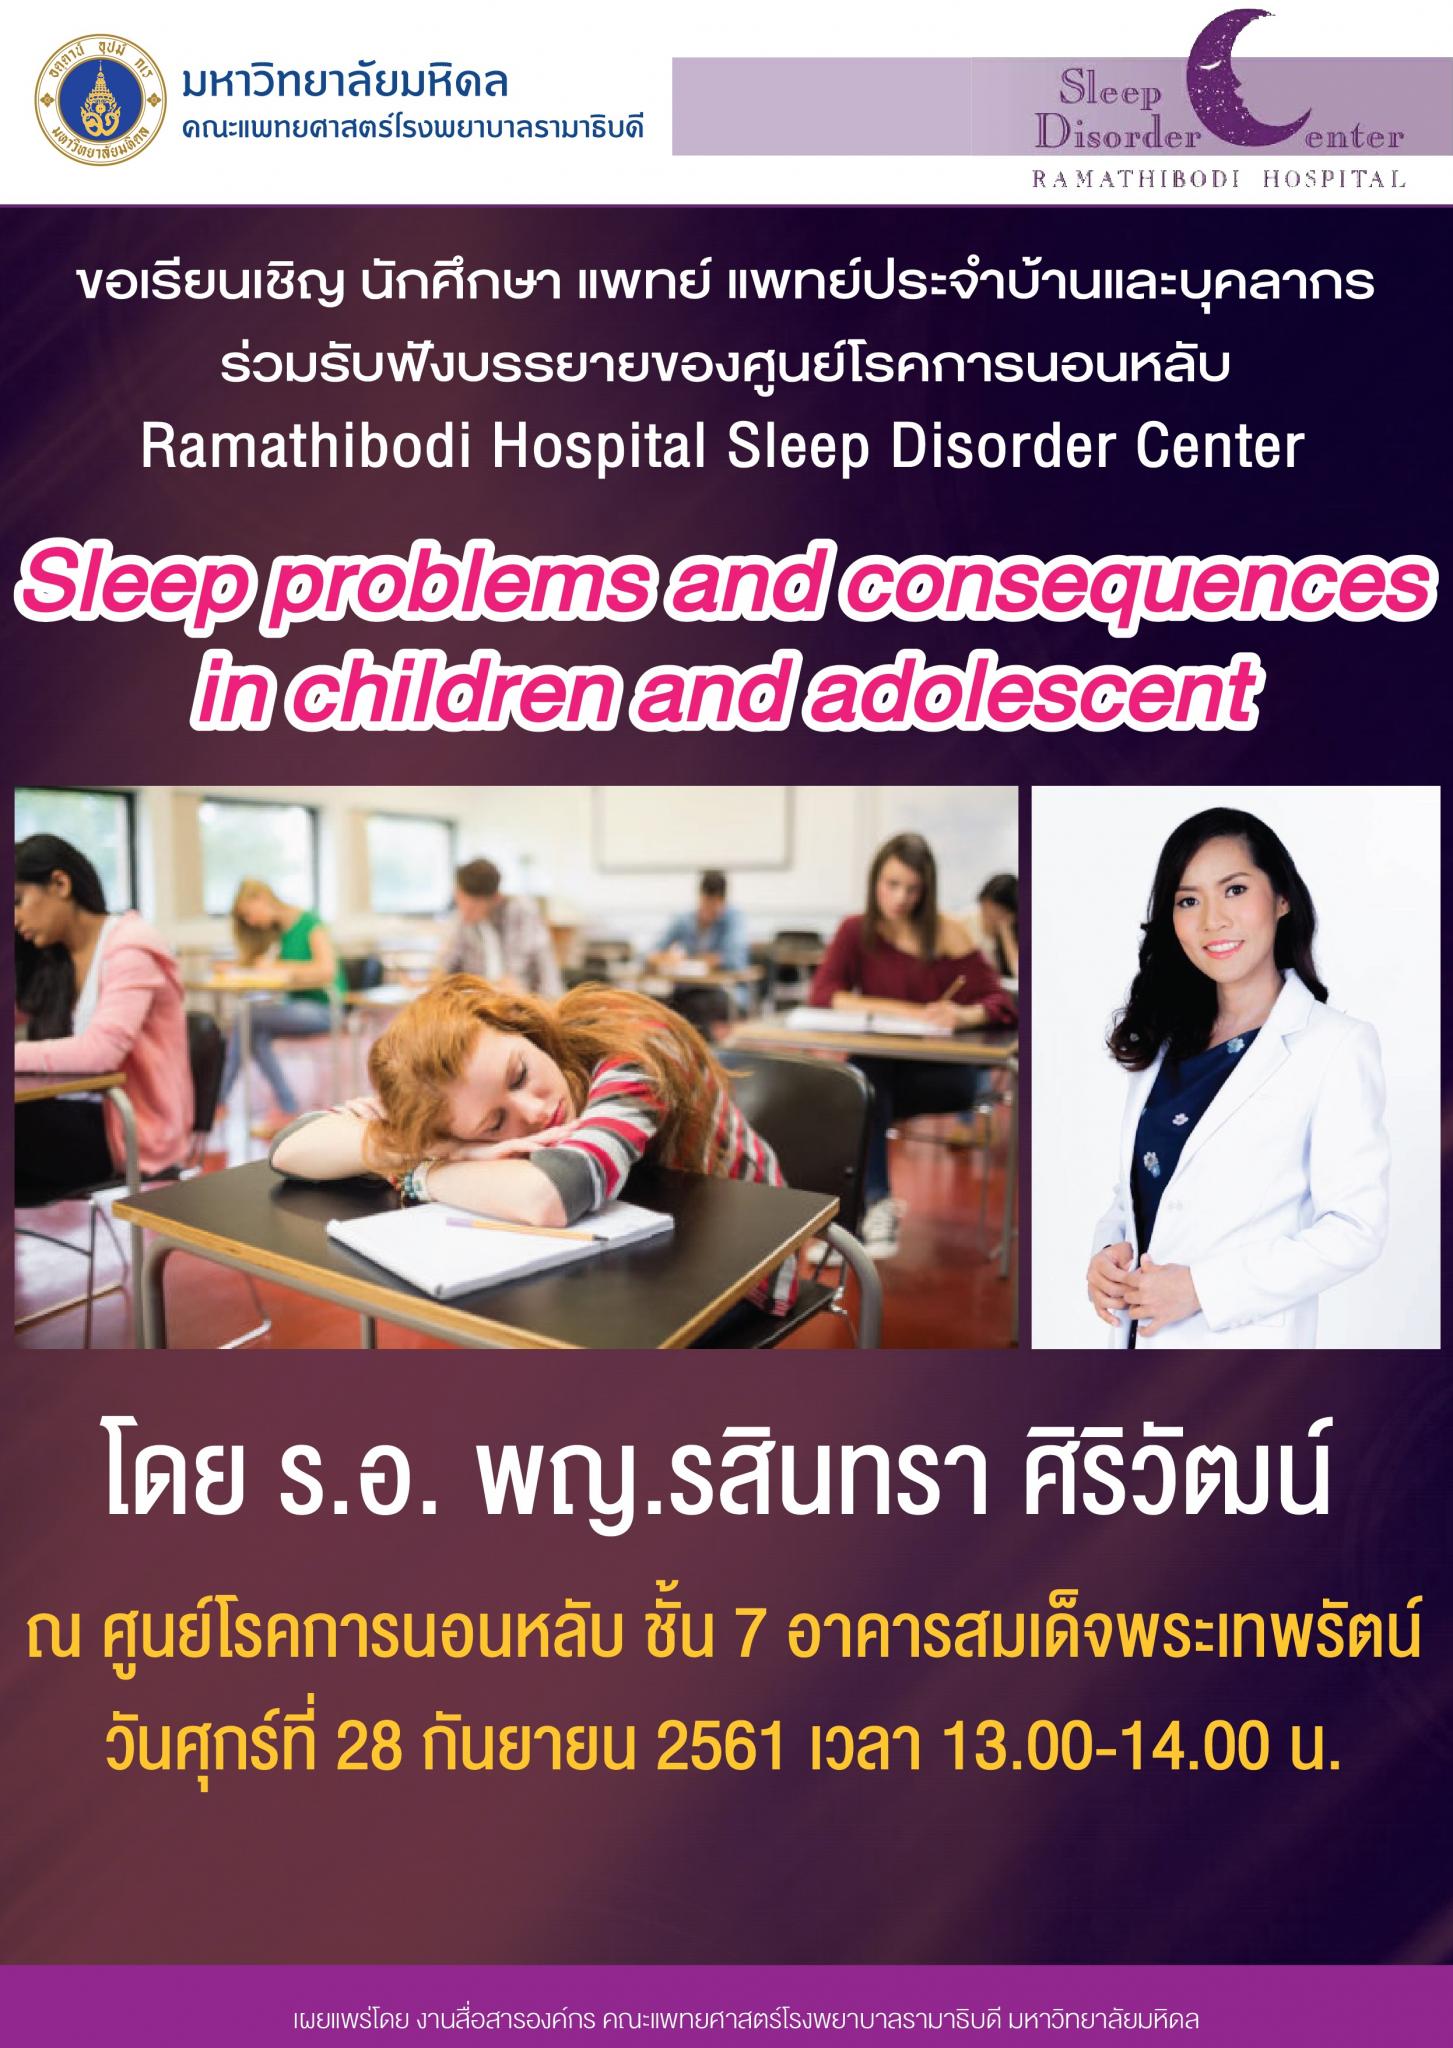 ขอเชิญร่วมรับฟังบรรยาย Sleep problems and consequences in children and adolescent